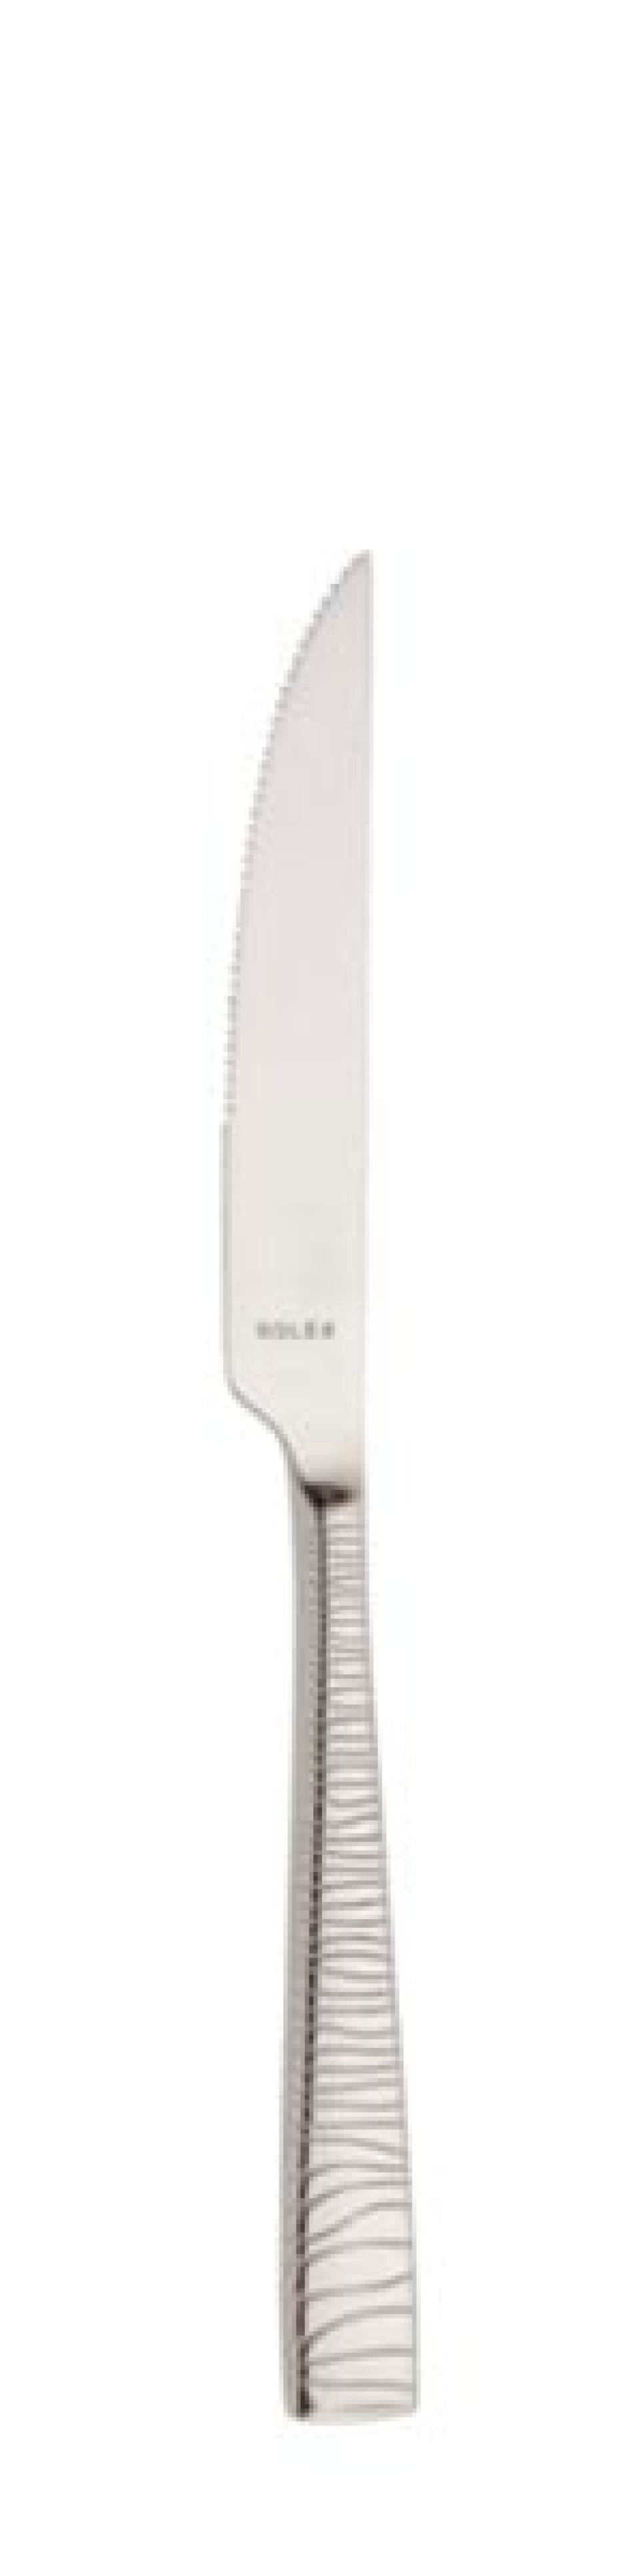 Alexa Steakmesser 236 mm - Solex in der Gruppe Tischgedeck / Besteck / Messer bei The Kitchen Lab (1284-21678)